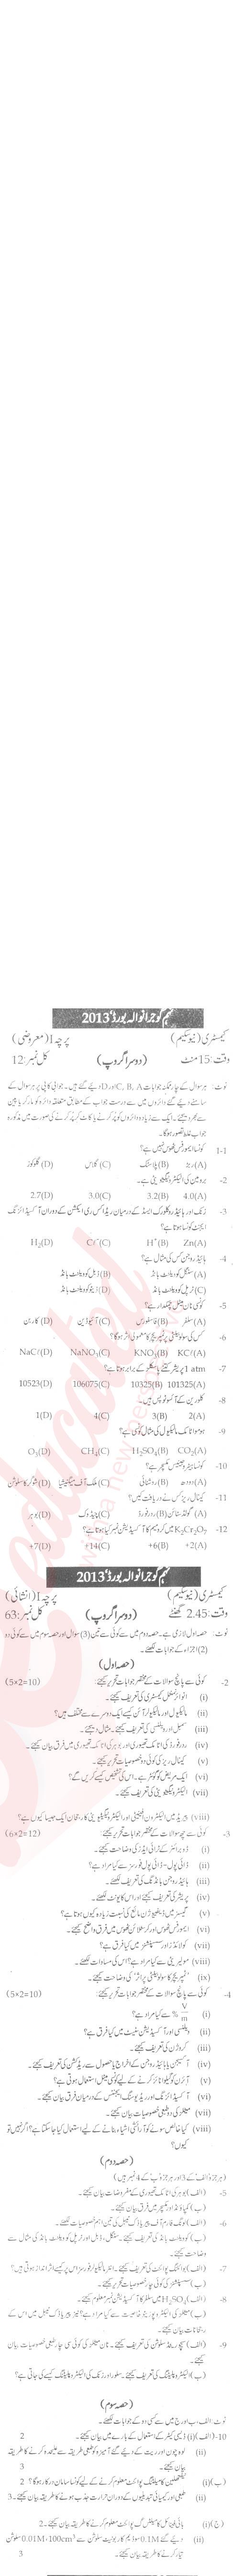 Chemistry 9th Urdu Medium Past Paper Group 2 BISE Gujranwala 2013